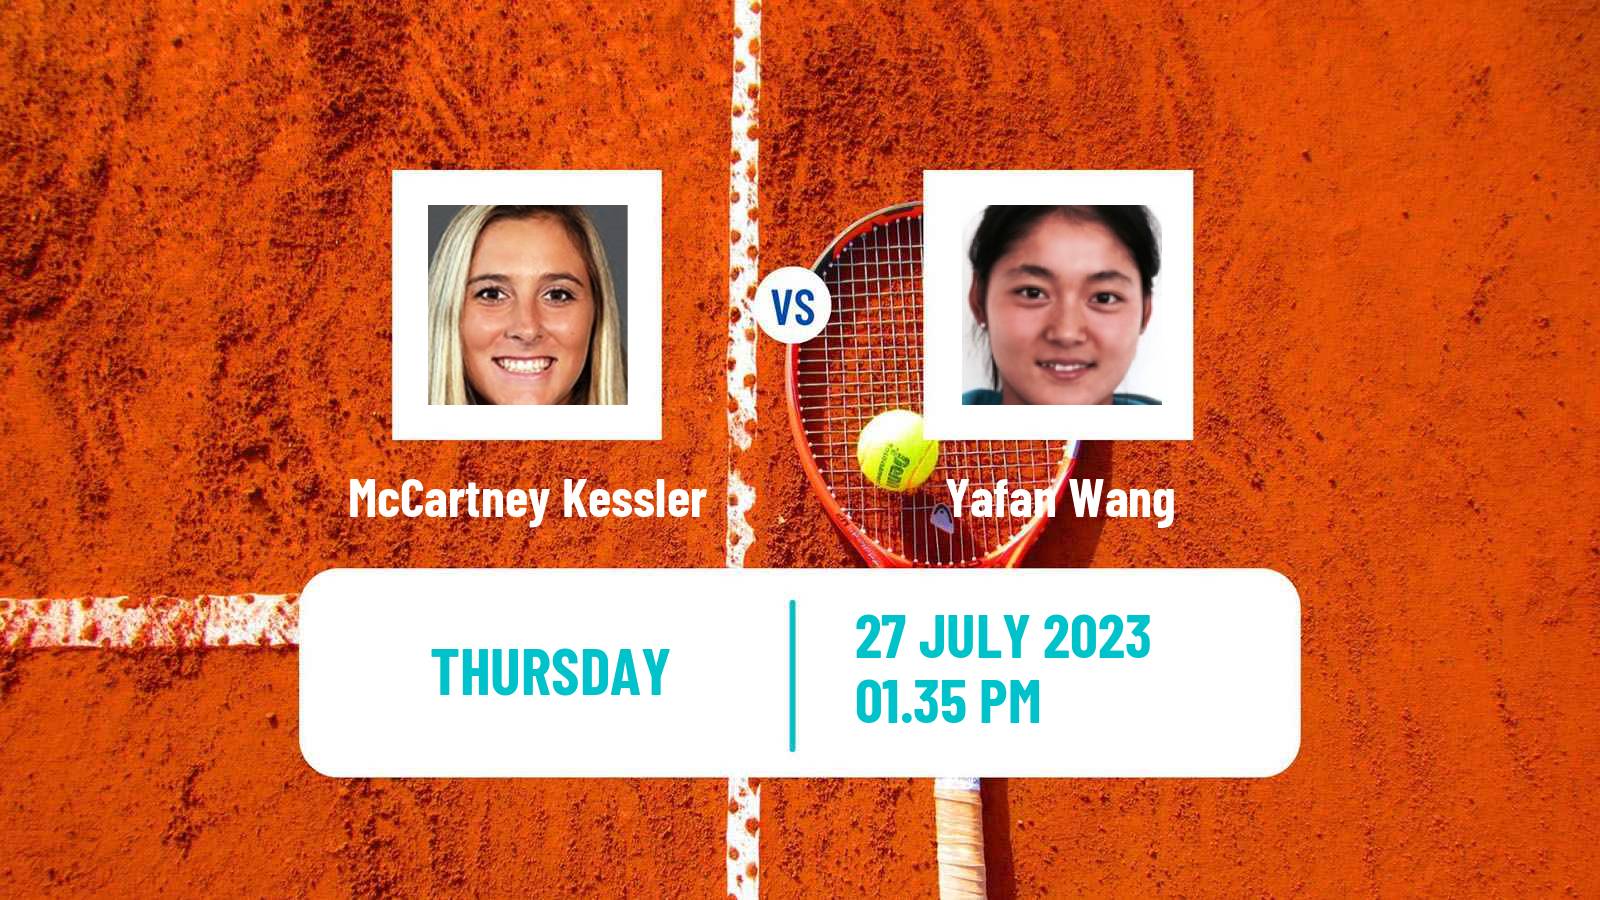 Tennis ITF W60 Dallas Tx Women McCartney Kessler - Yafan Wang